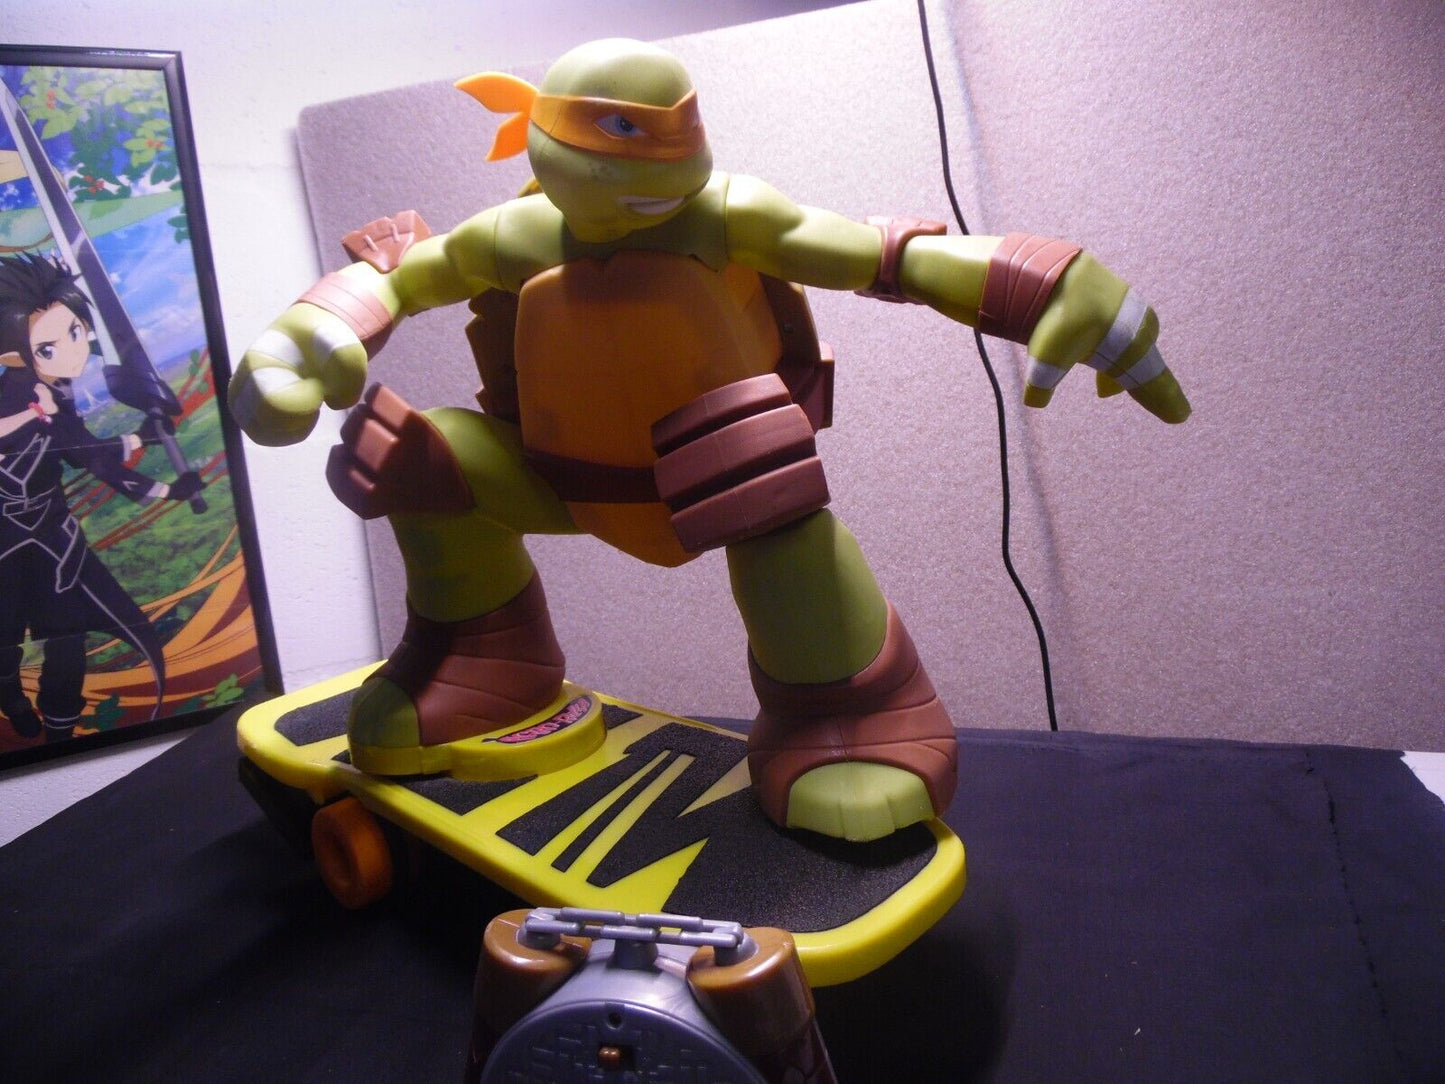 Jakks Teenage Mutant Ninja Turtle Powered Skateboarding Mikey RC Agro-Rilla TMNT